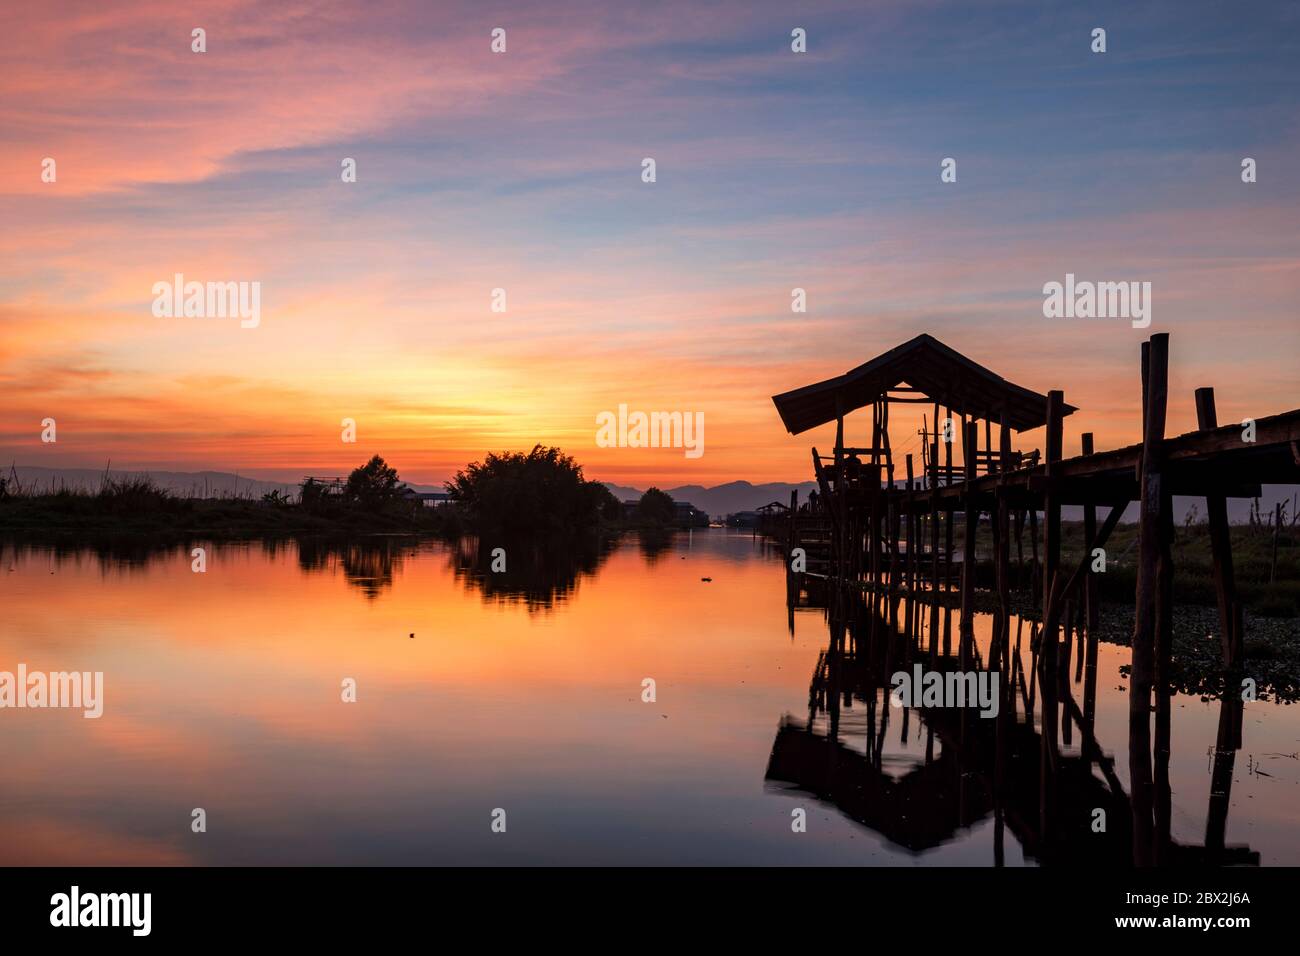 Sunset at the Maing Thouk Wooden Bridge, Inle Lake, Myanmar Stock Photo